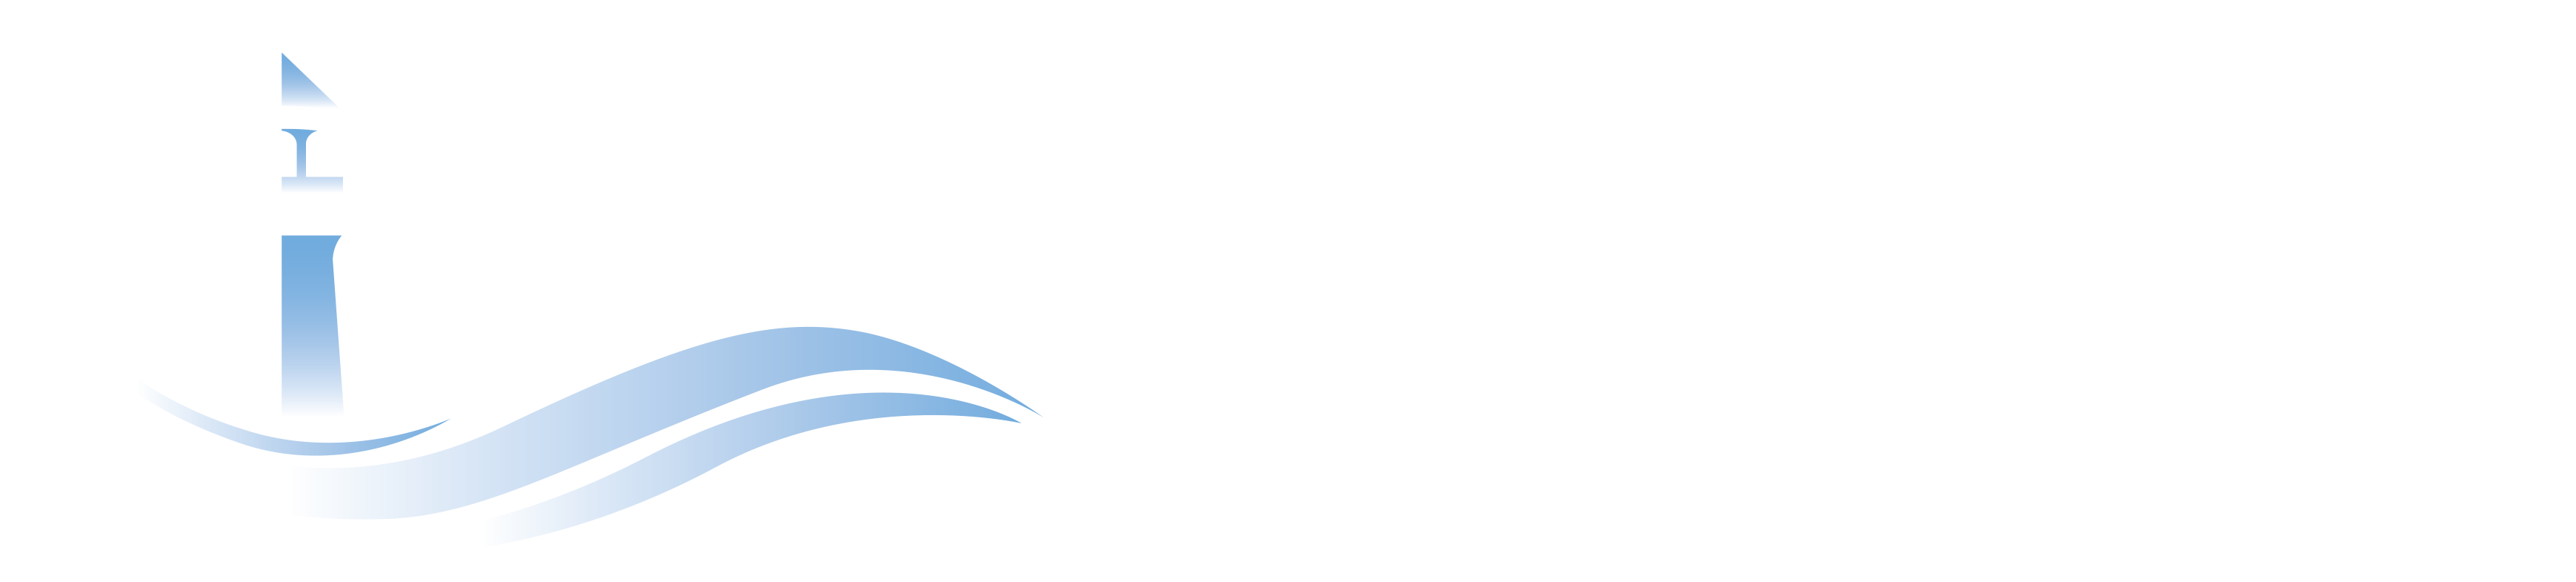 Seaways Psychology Services Logo